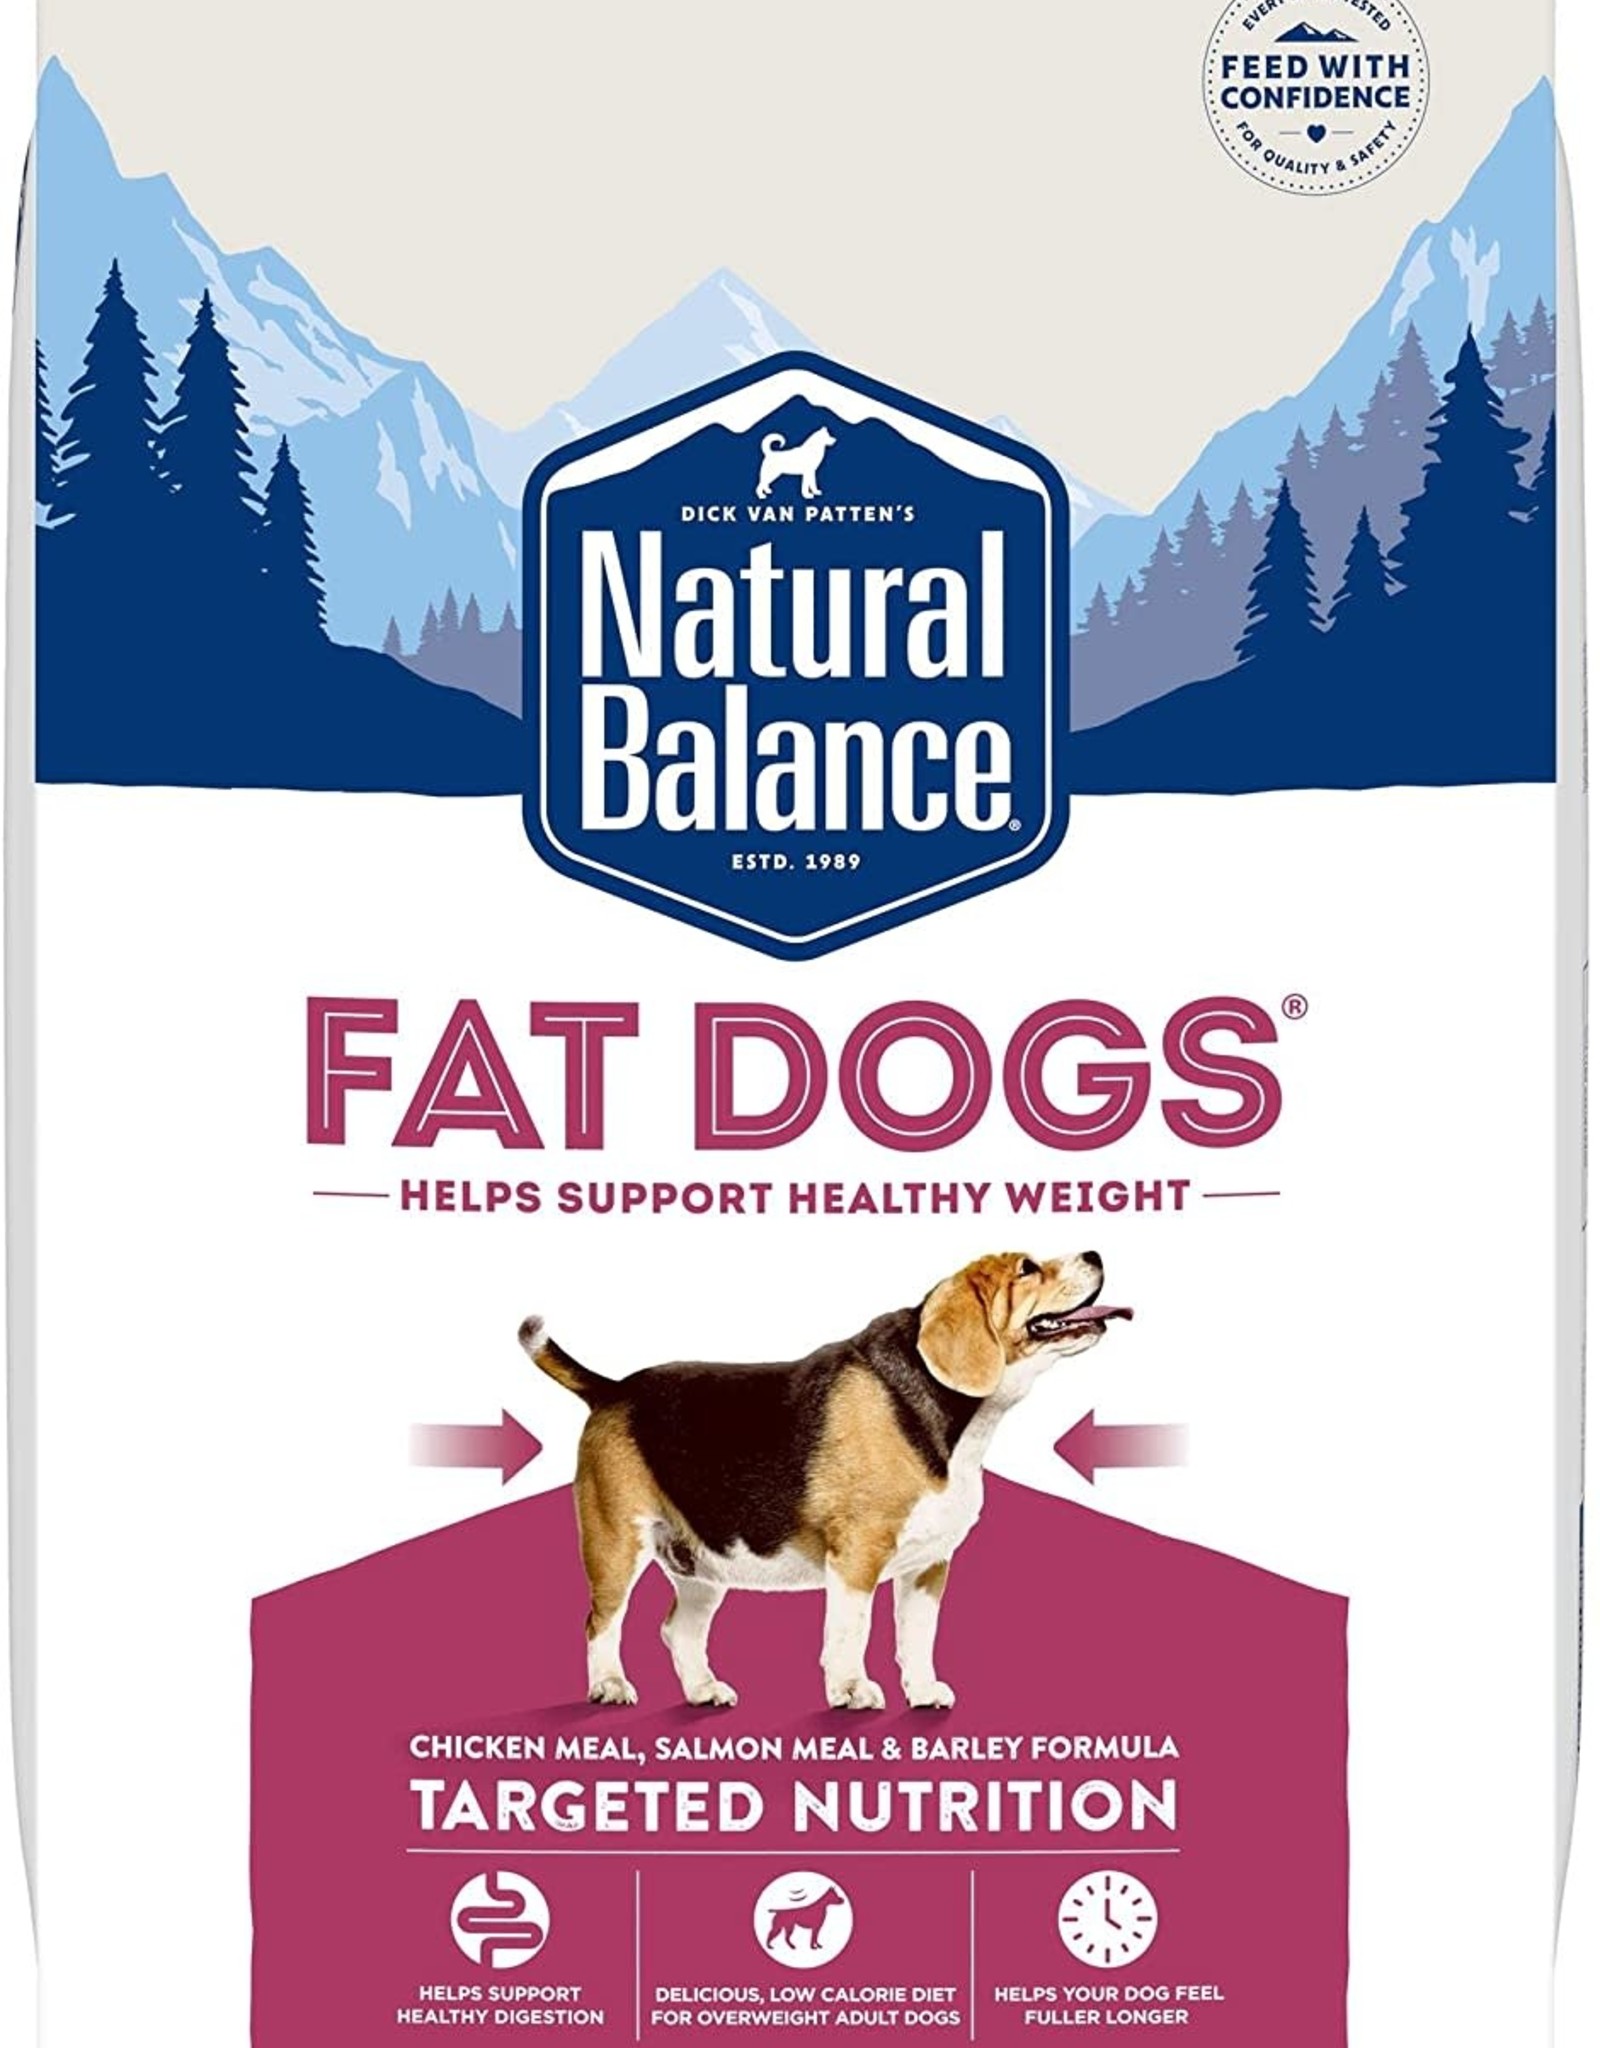 NATURAL BALANCE PET FOODS, INC NATURAL BALANCE FAT DOGS LOW CALORIE 15LBS